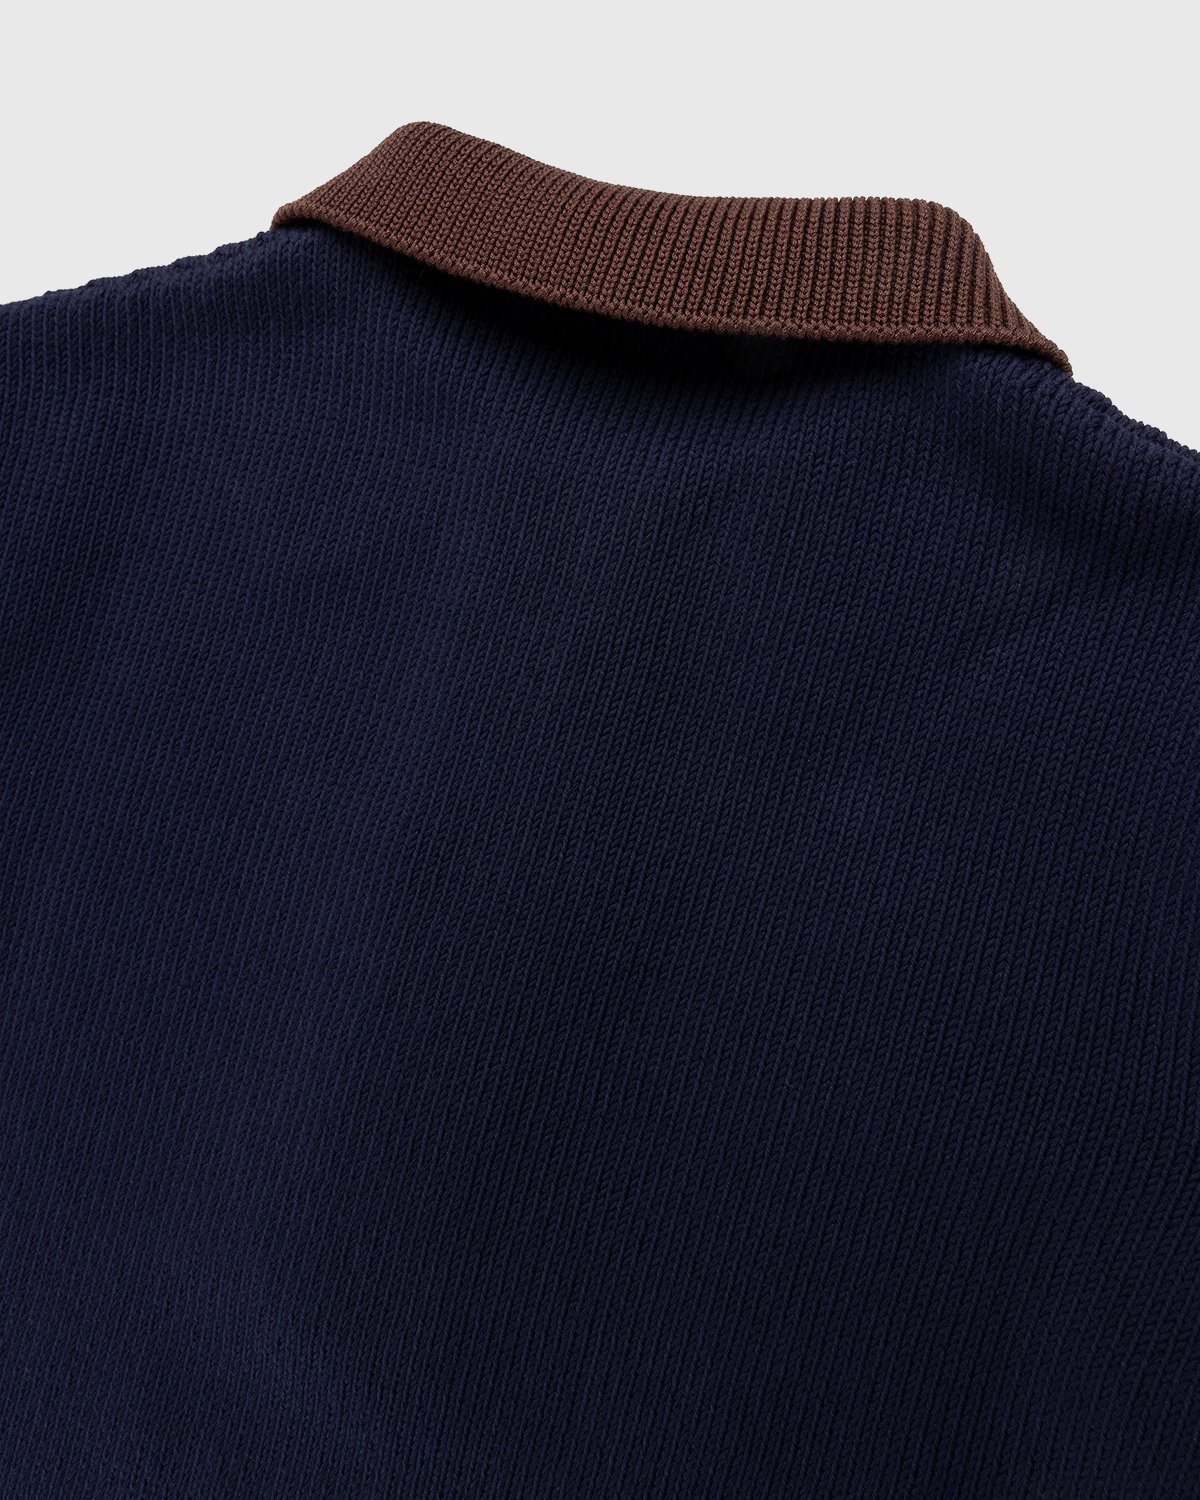 Jil Sander - Short Sleeve Knit Shirt Dark Blue - Clothing - Blue - Image 3